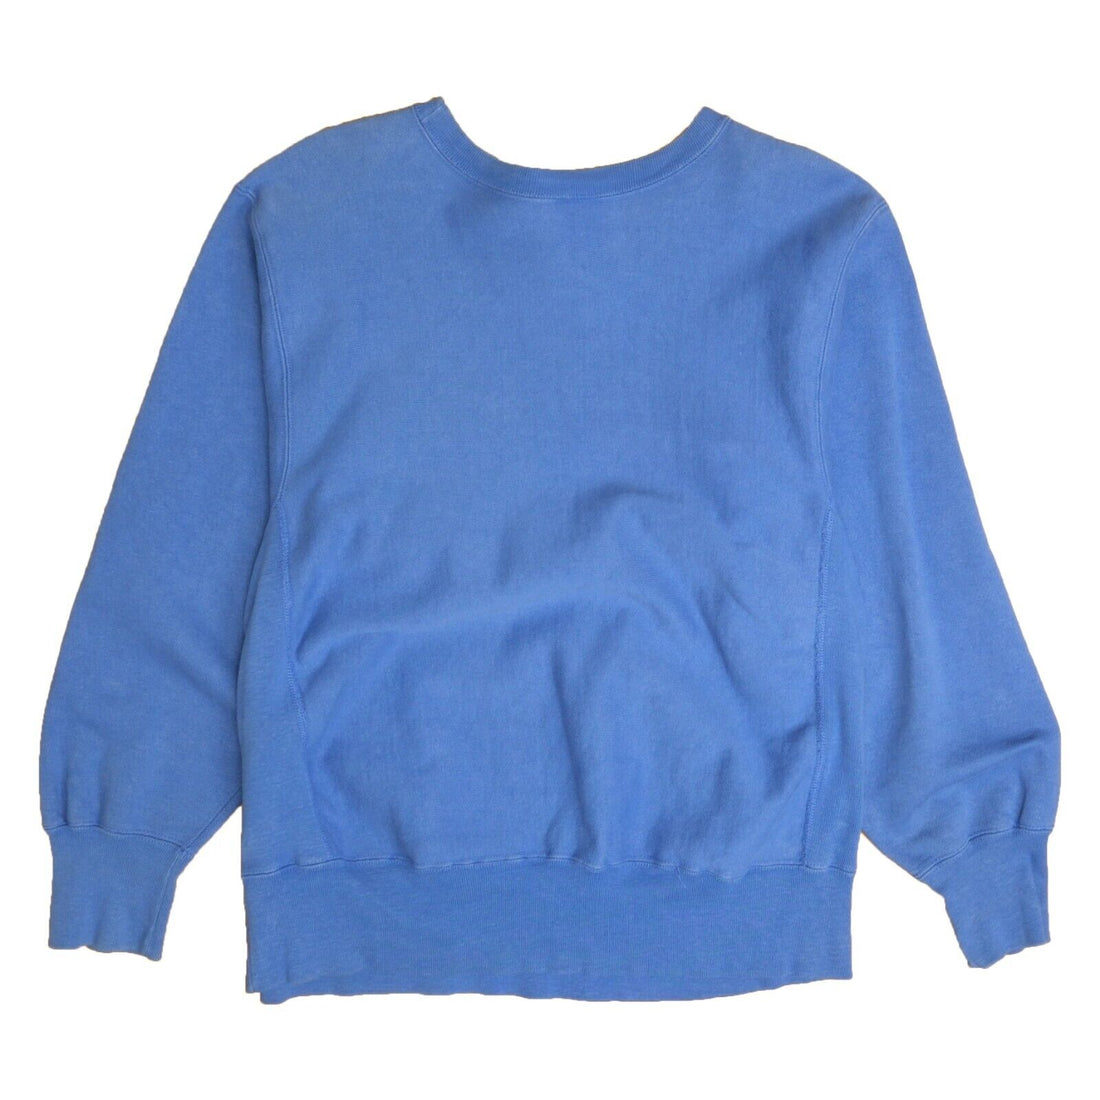 Vintage Surf Shop Champion Reverse Weave Sweatshirt Size Large Blue 80s